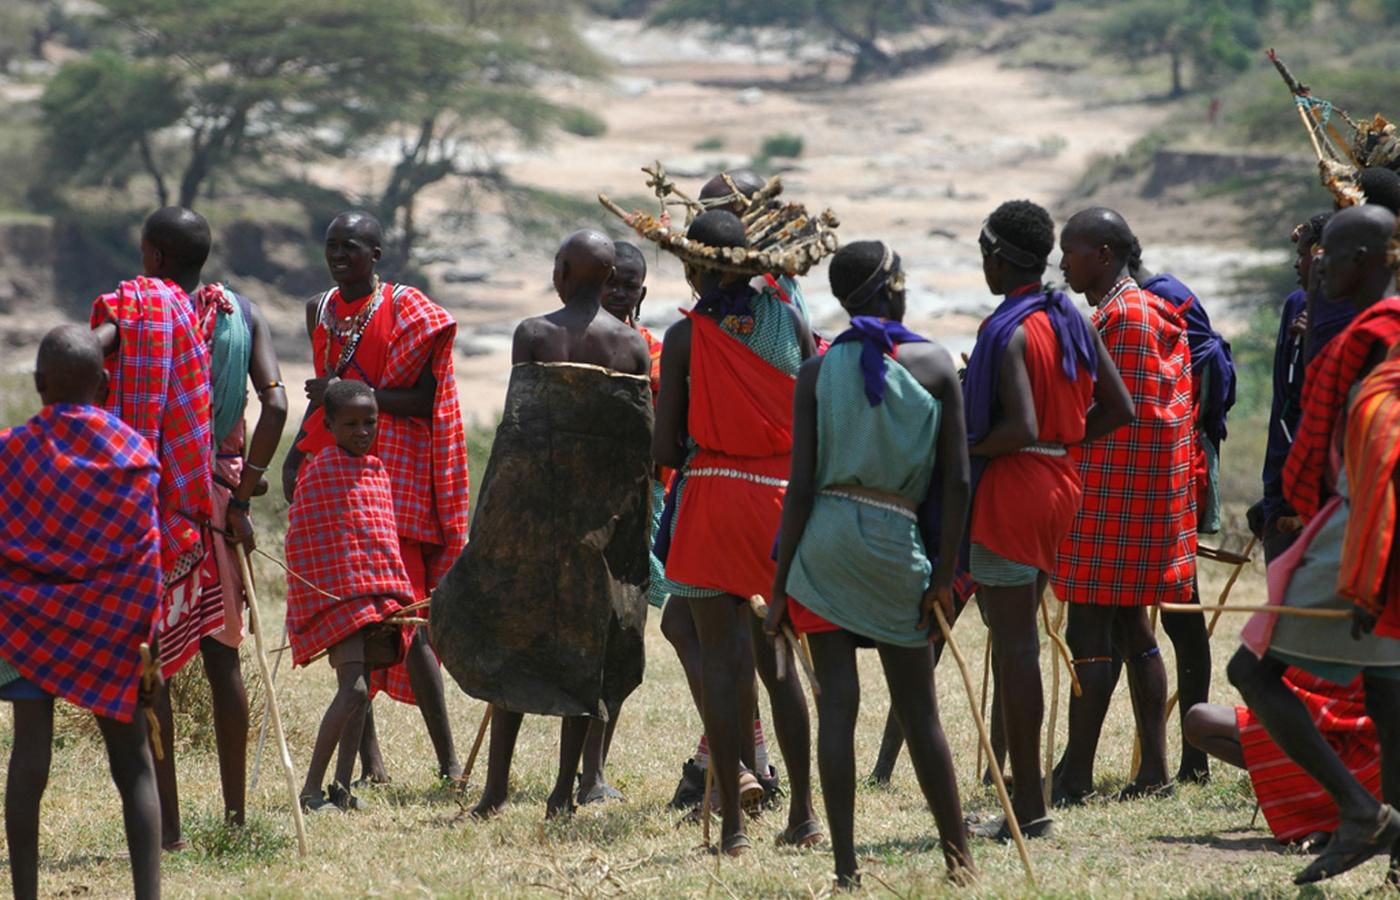 Żelaznym punktem wycieczek w Tanzanii są odwiedziny u lokalnych Masajów, którzy za zryczałtowaną opłatą 20 dol. raczą białych historiami o młodzieńcach żyjących przez kilka lat w dziczy, przechodzących tam niezbędny etap inicjacji.